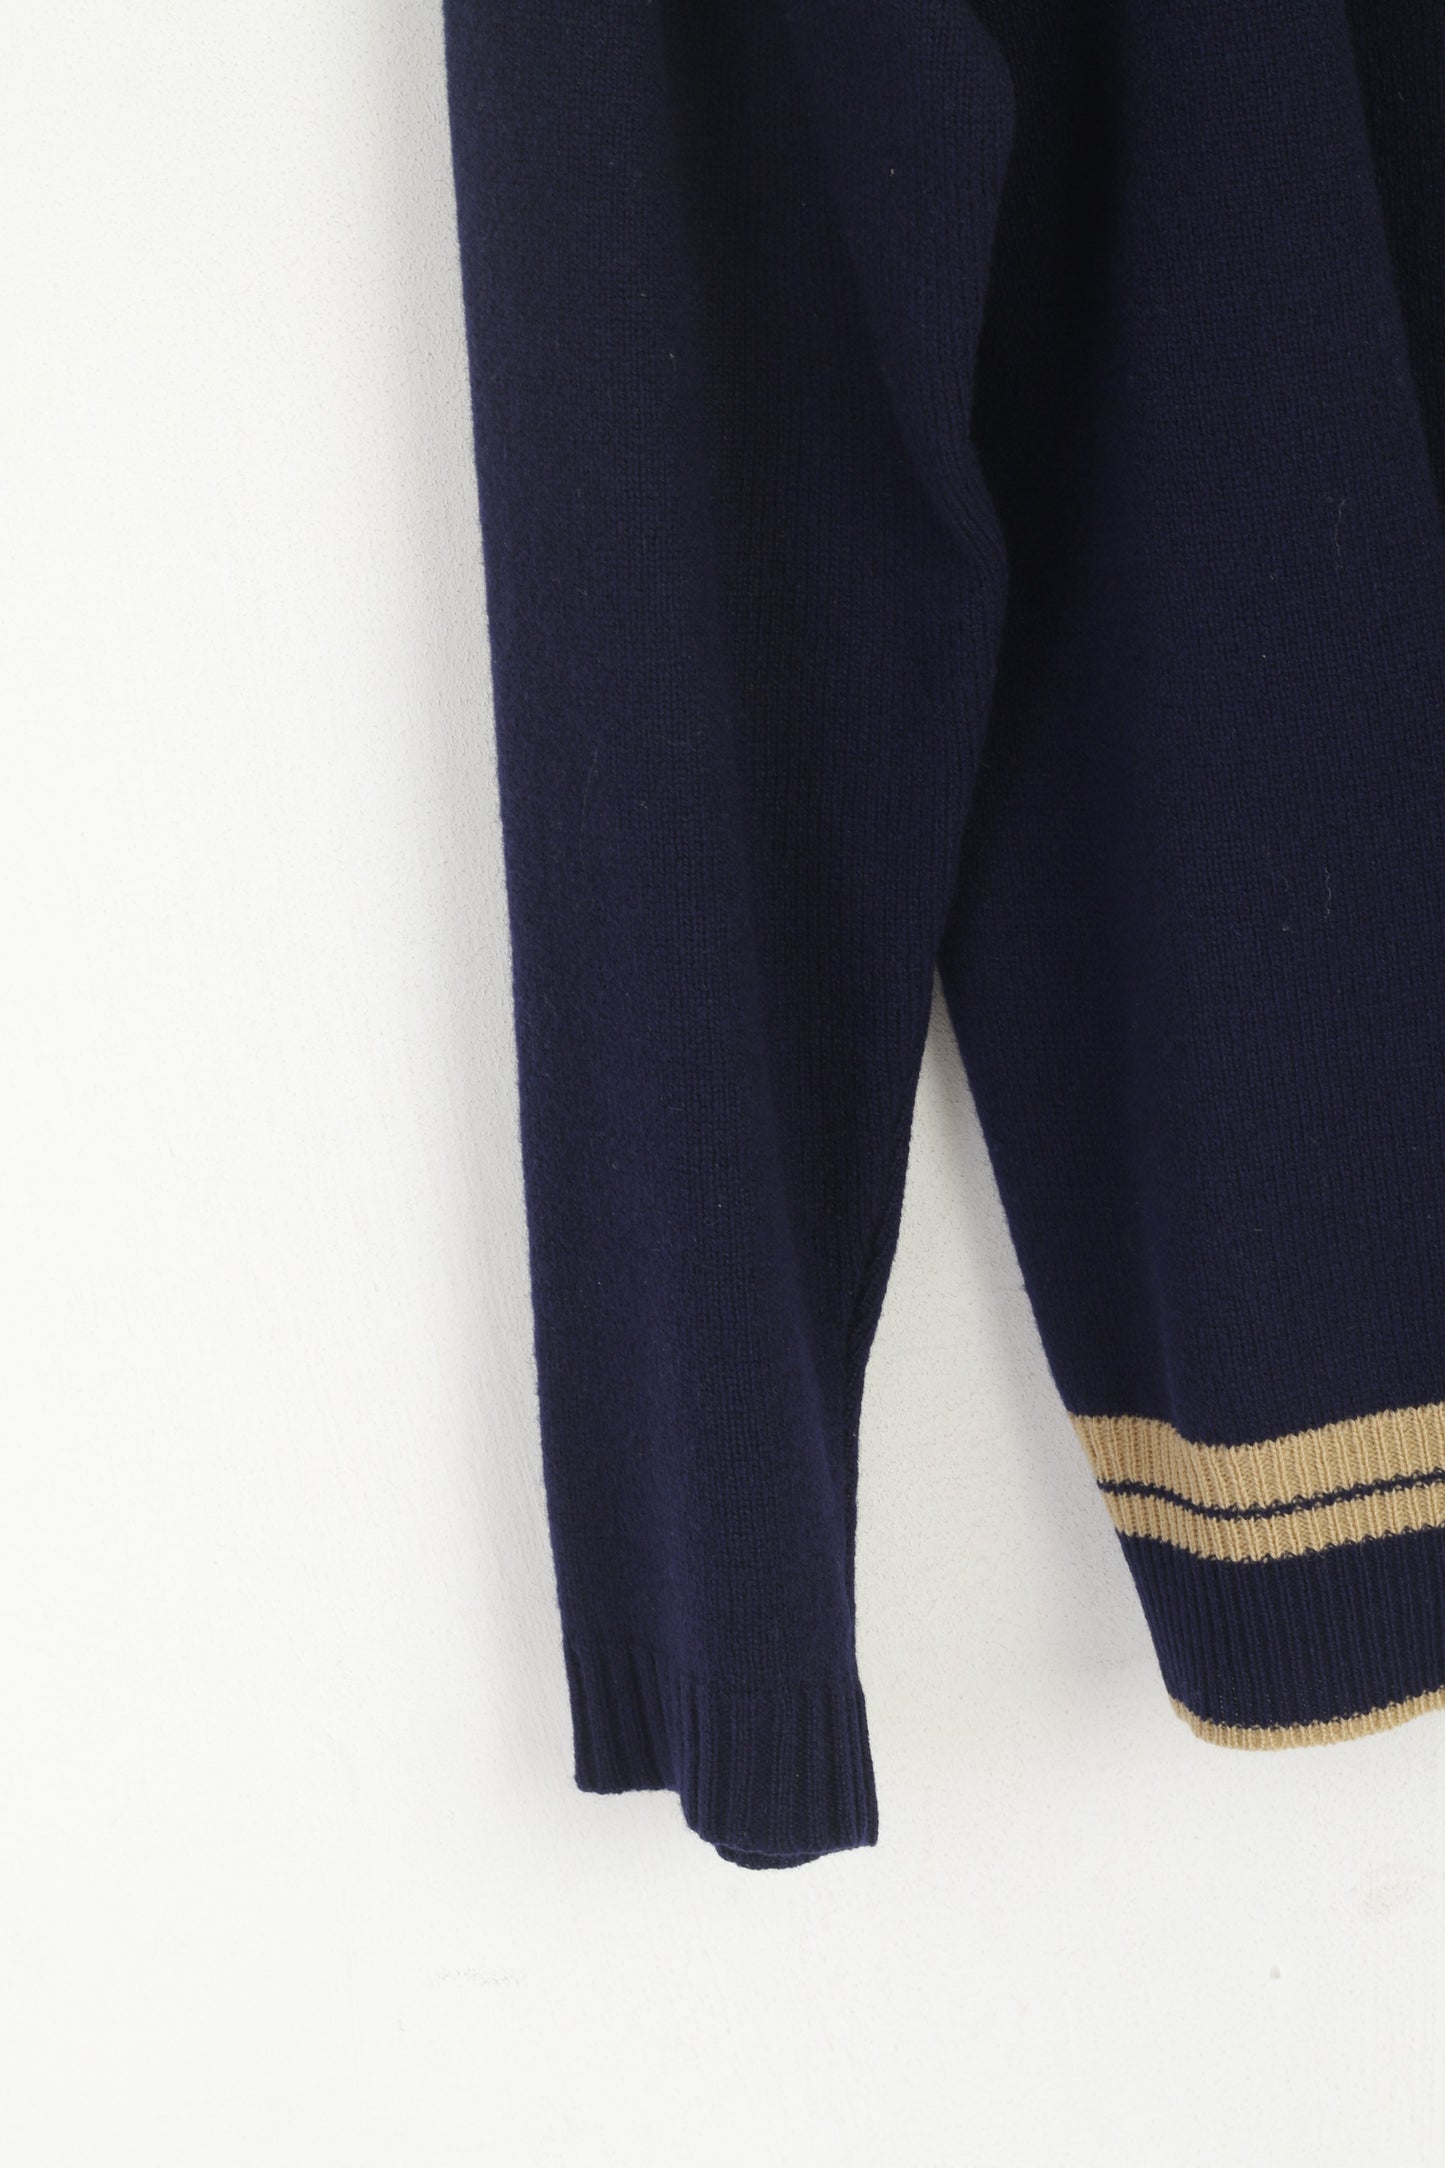 Maglione cardigan con zip intera vintage in lana blu scuro da uomo Henri Lloyd